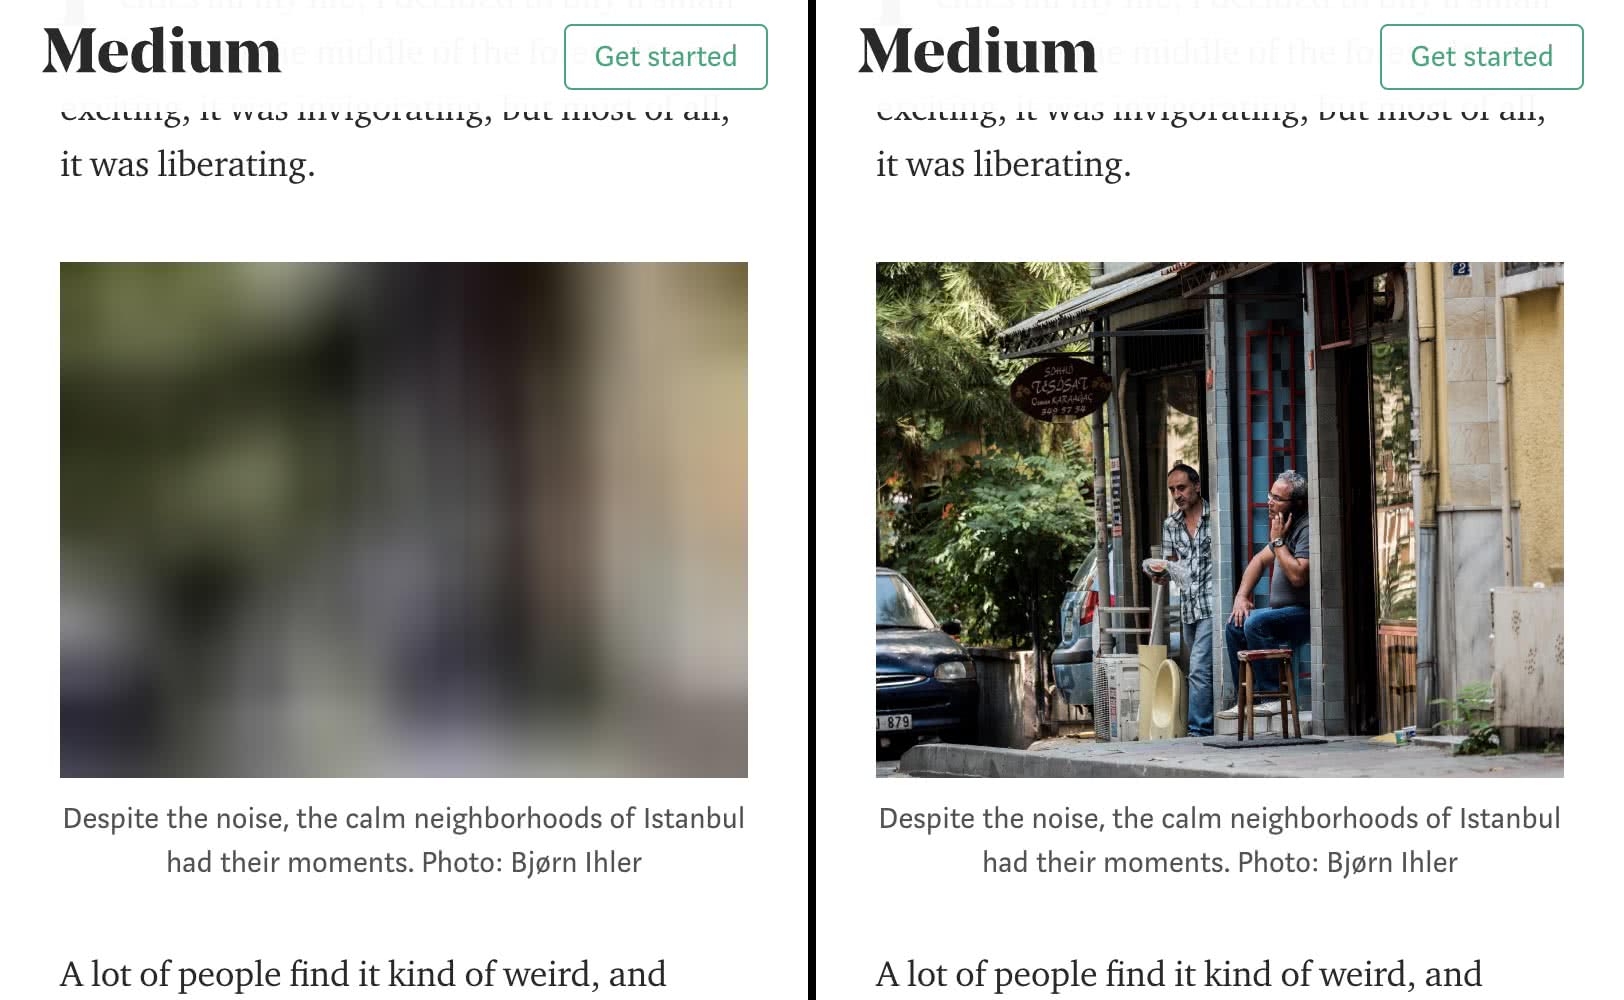 تصویری از وب سایت Medium در حال مرور، که بارگذاری تنبل را در عمل نشان می دهد. مکان نگهدار تار در سمت چپ و منبع بارگذاری شده در سمت راست قرار دارد.